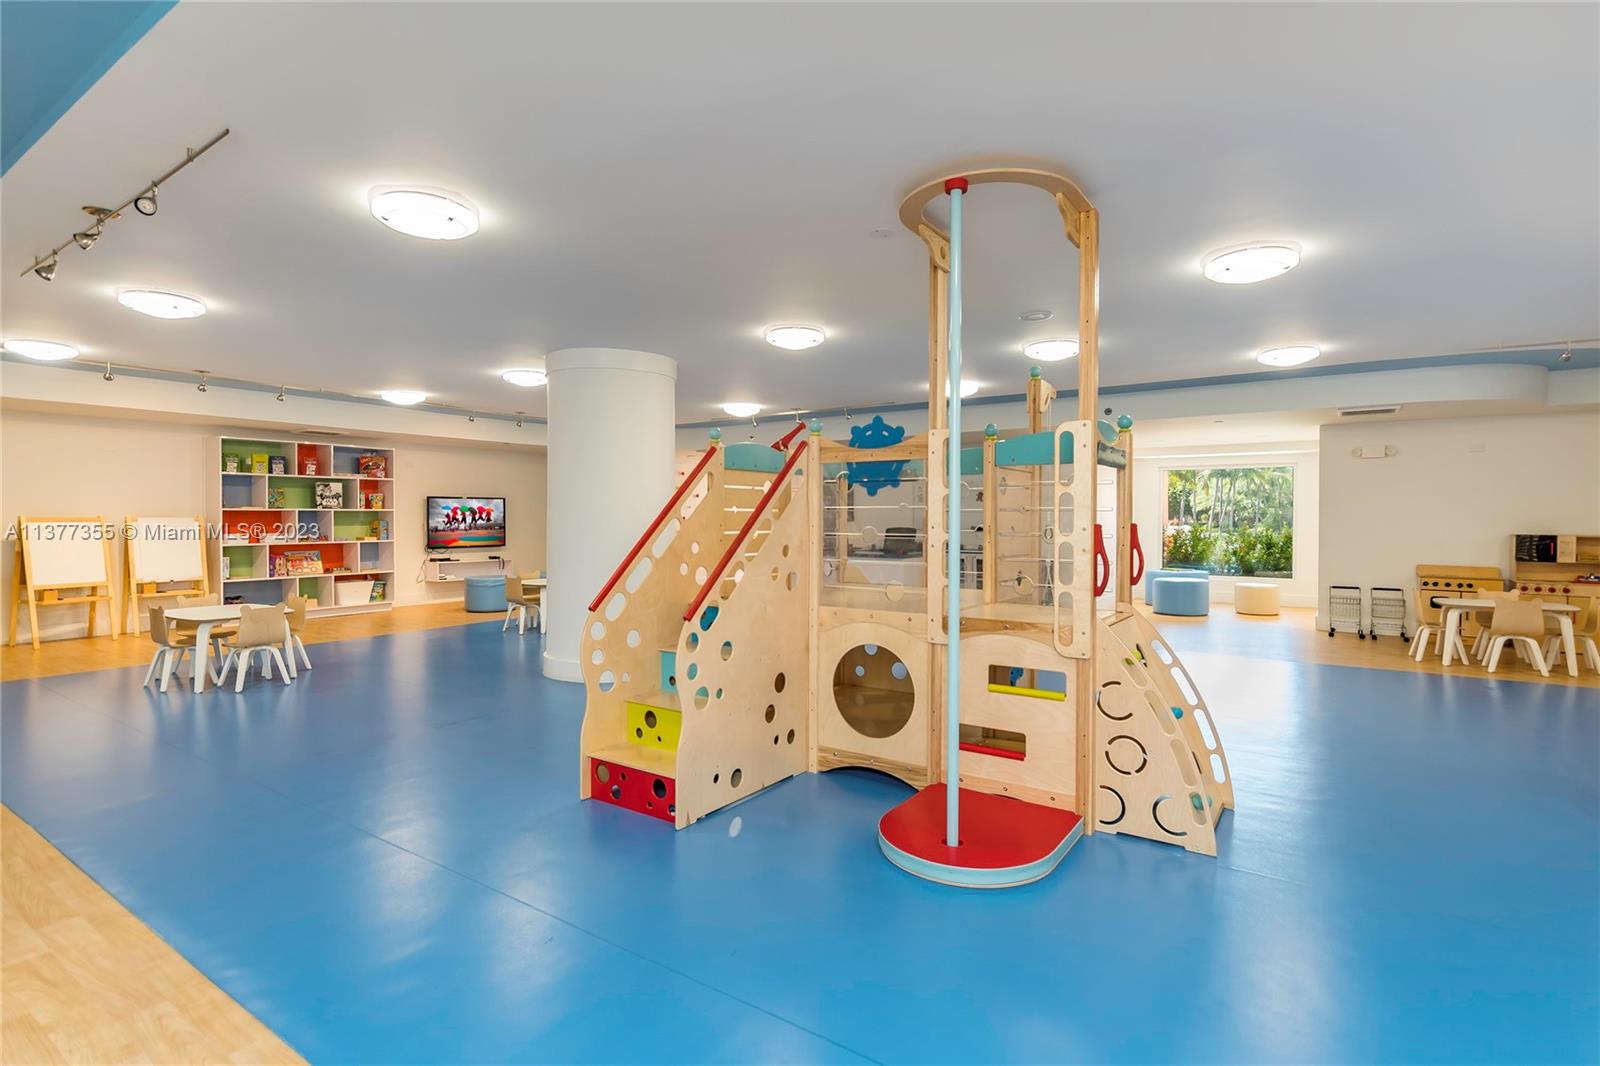 Children's Play Room - Indoor